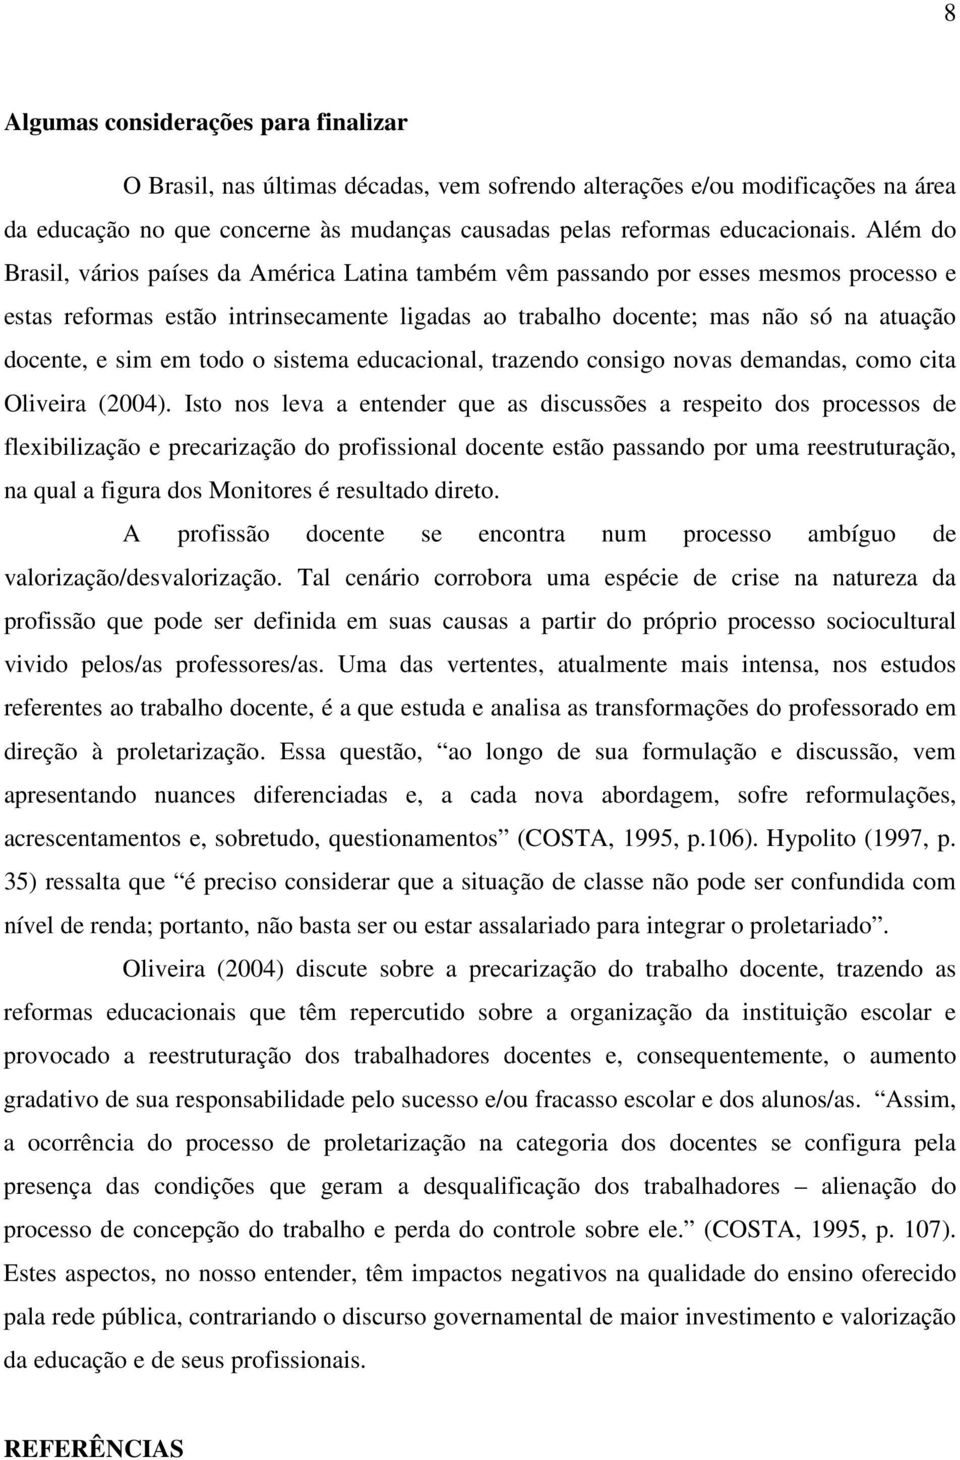 em todo o sistema educacional, trazendo consigo novas demandas, como cita Oliveira (2004).